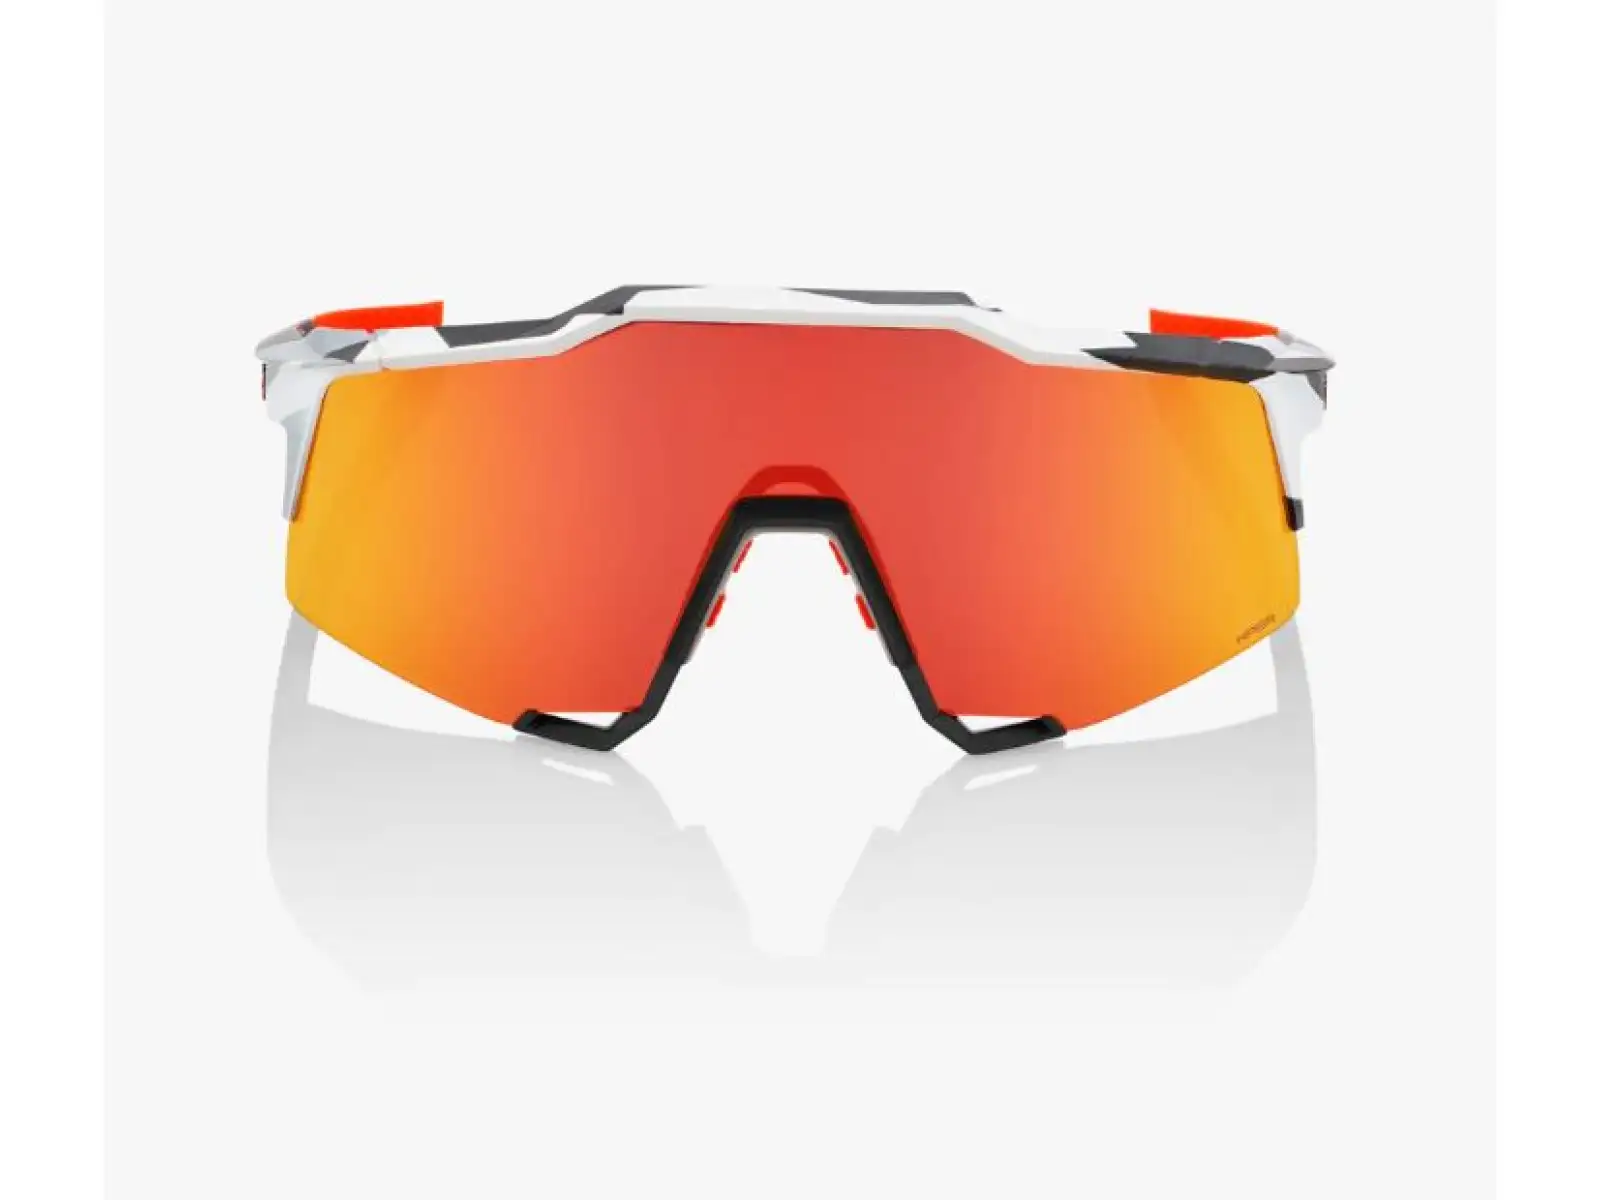 100% slnečné okuliare SPEEDCRAFT HiPER Red Mult s fotochromatickými sklami biela/čierna/oranžová